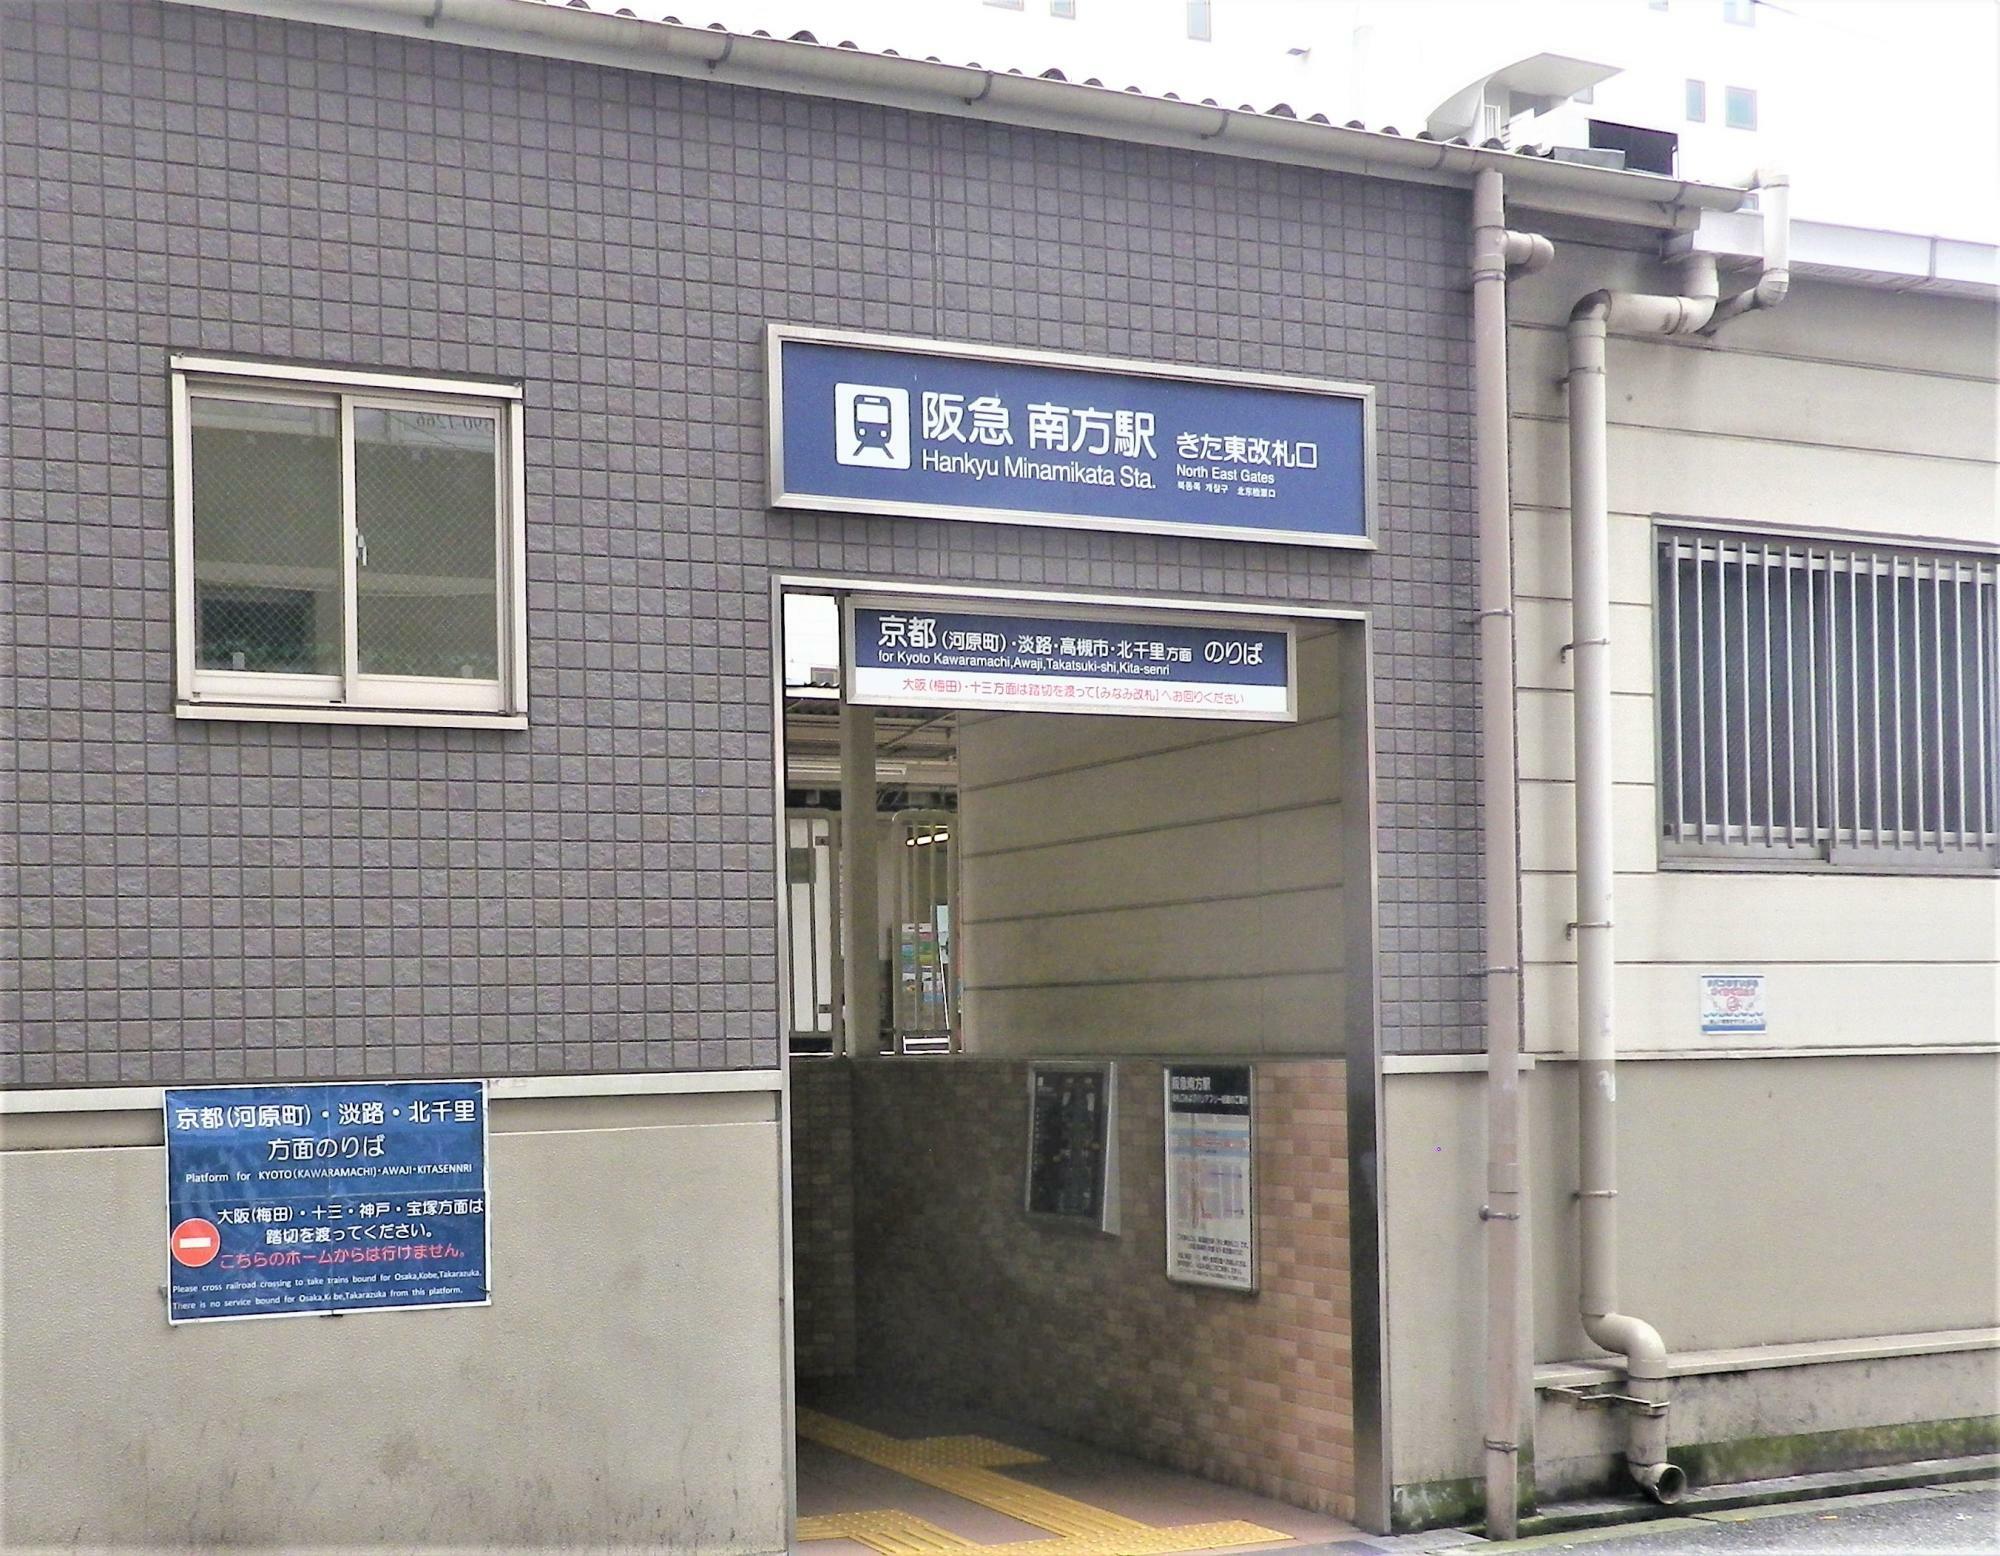 阪急電車南方駅の「きた東改札口」。